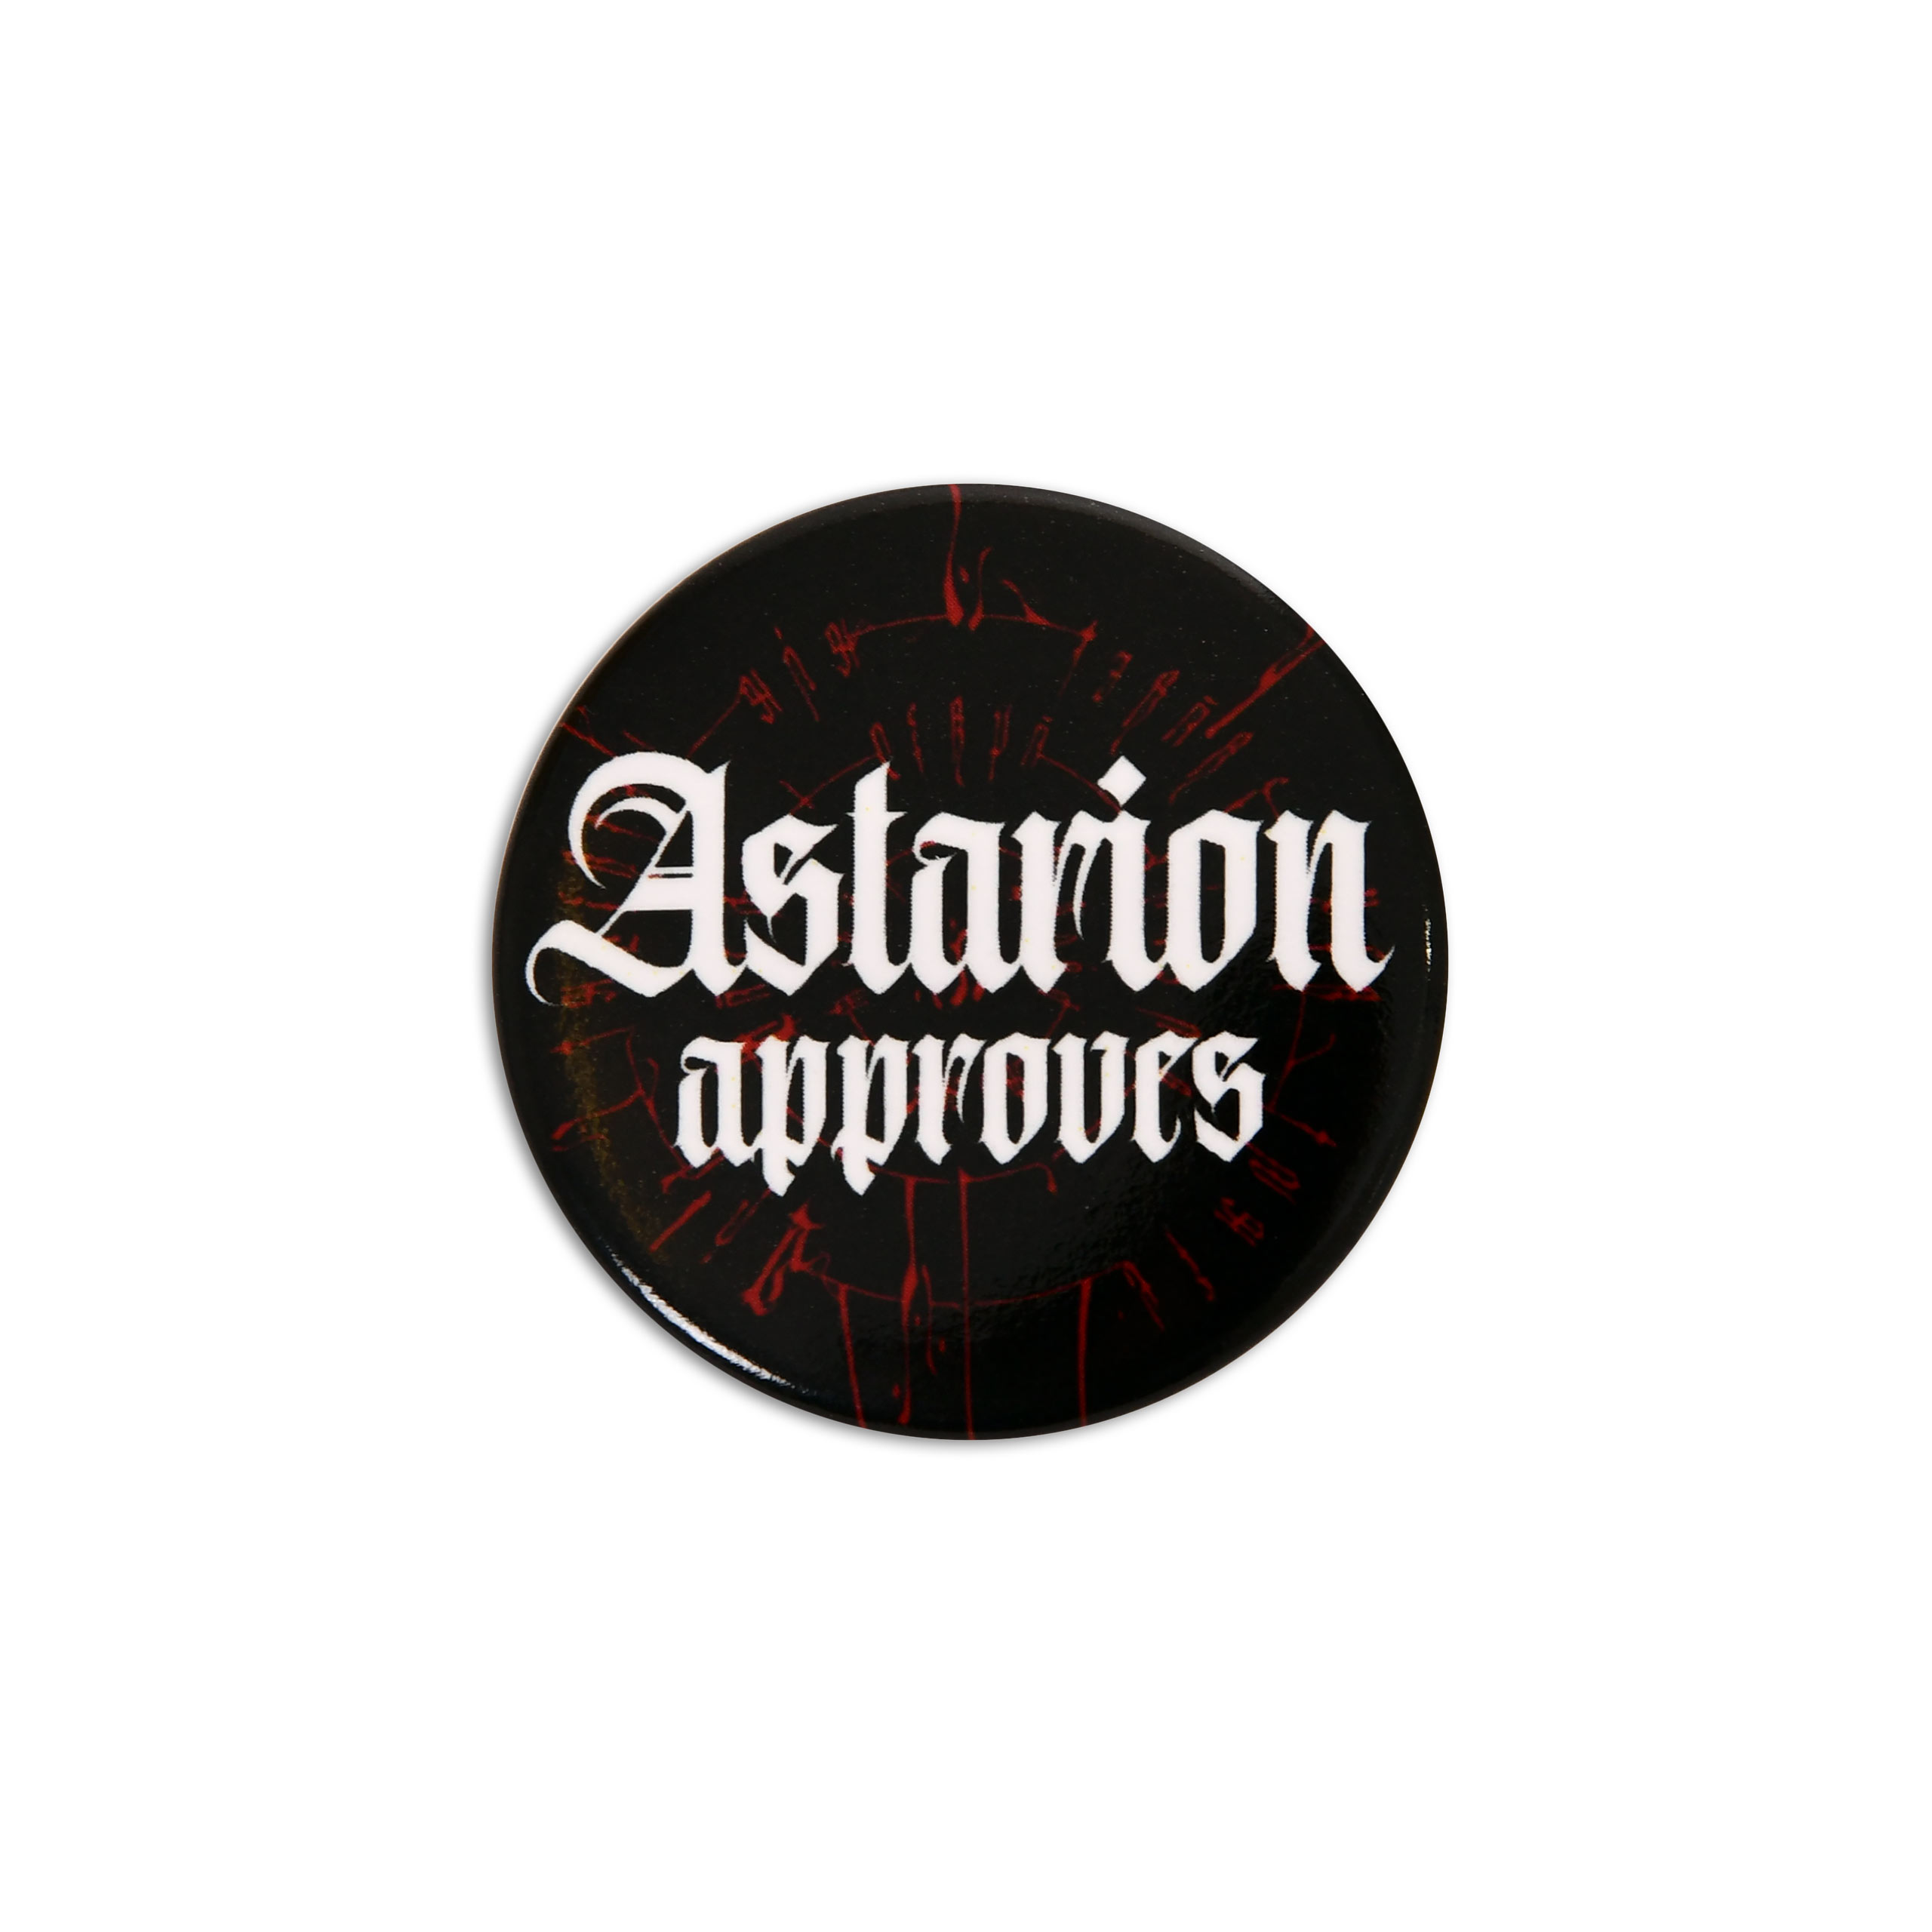 Astarion Approves Button for Baldur's Gate Fans